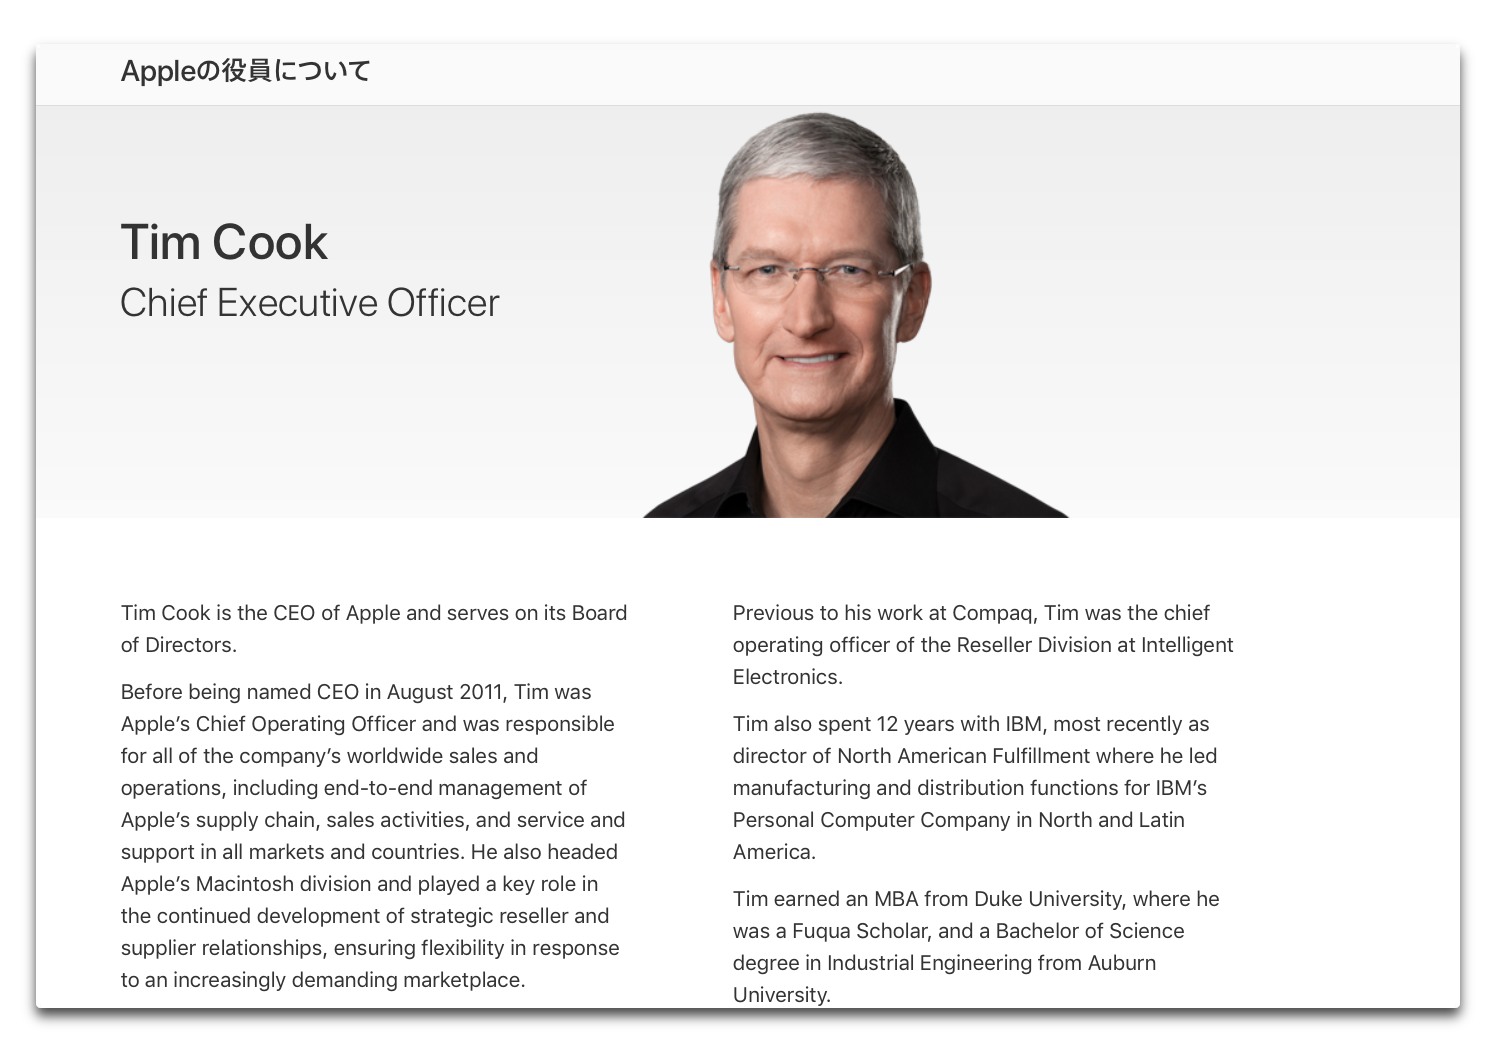 Apple、「Appleの役員について」のページデザインを更新